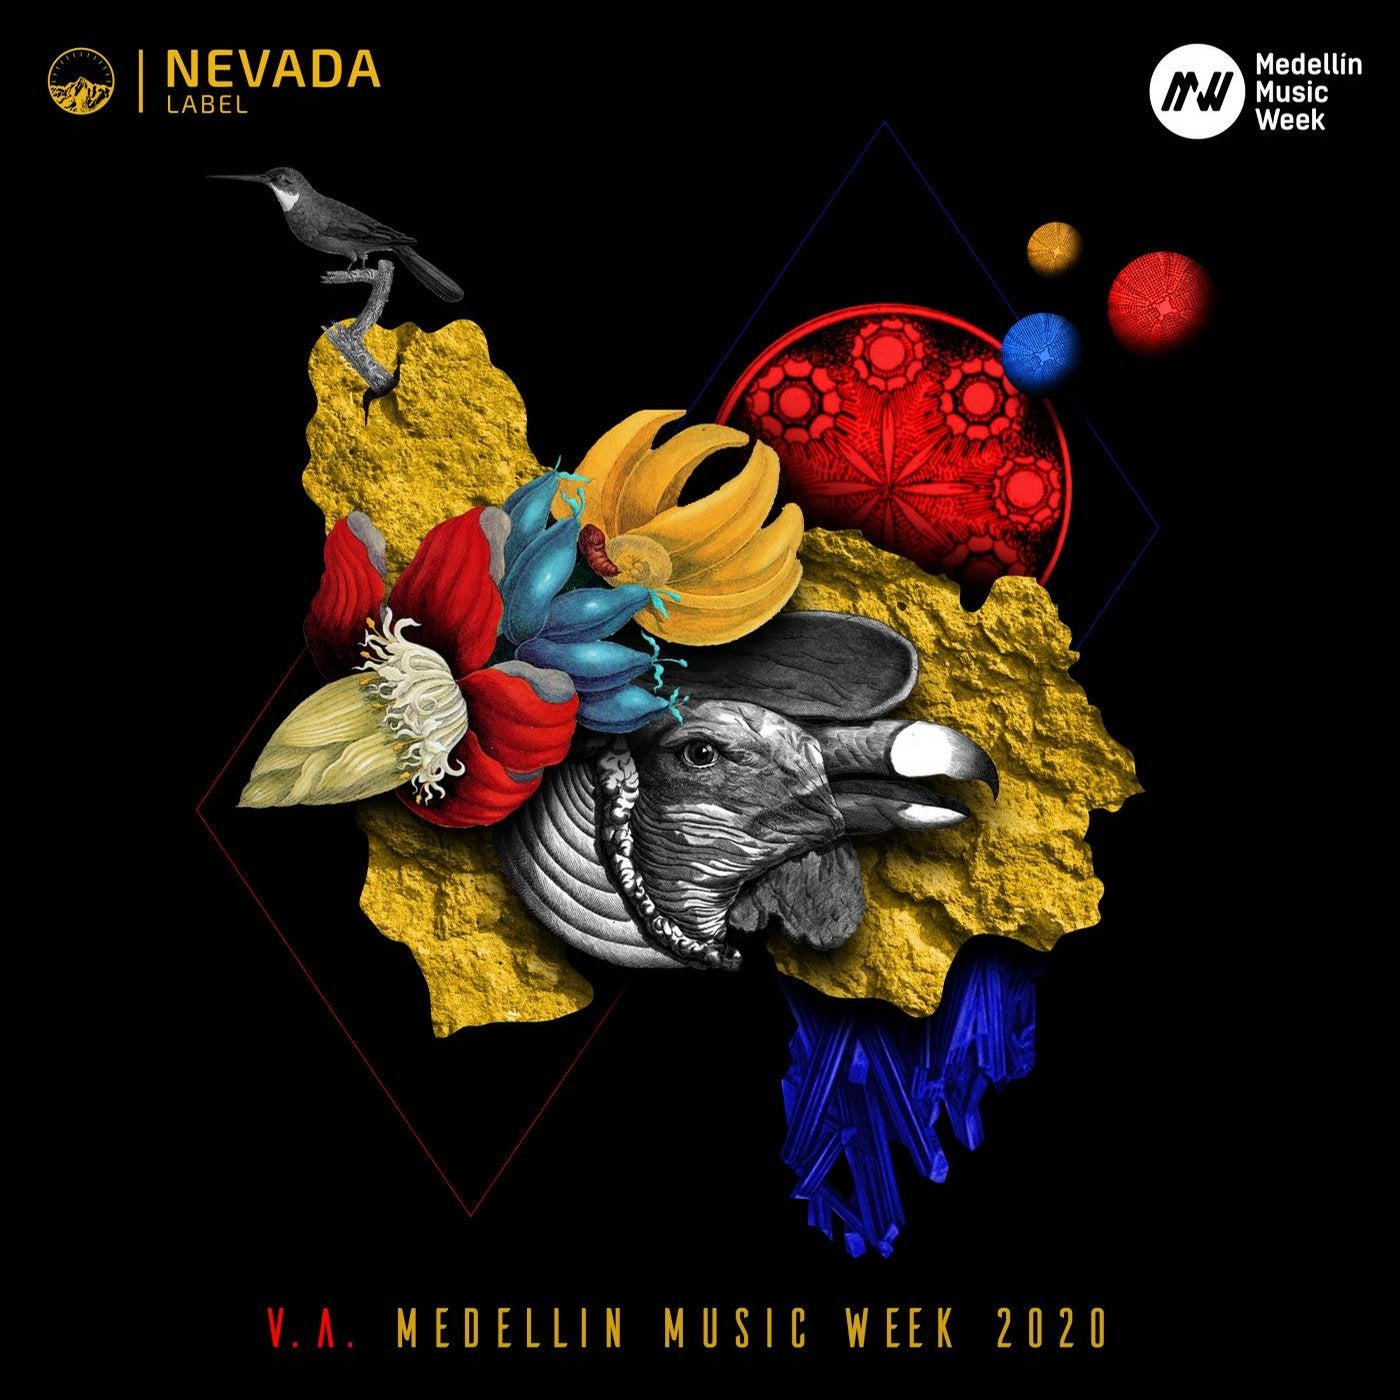 V.A Medellin Music Week 2020